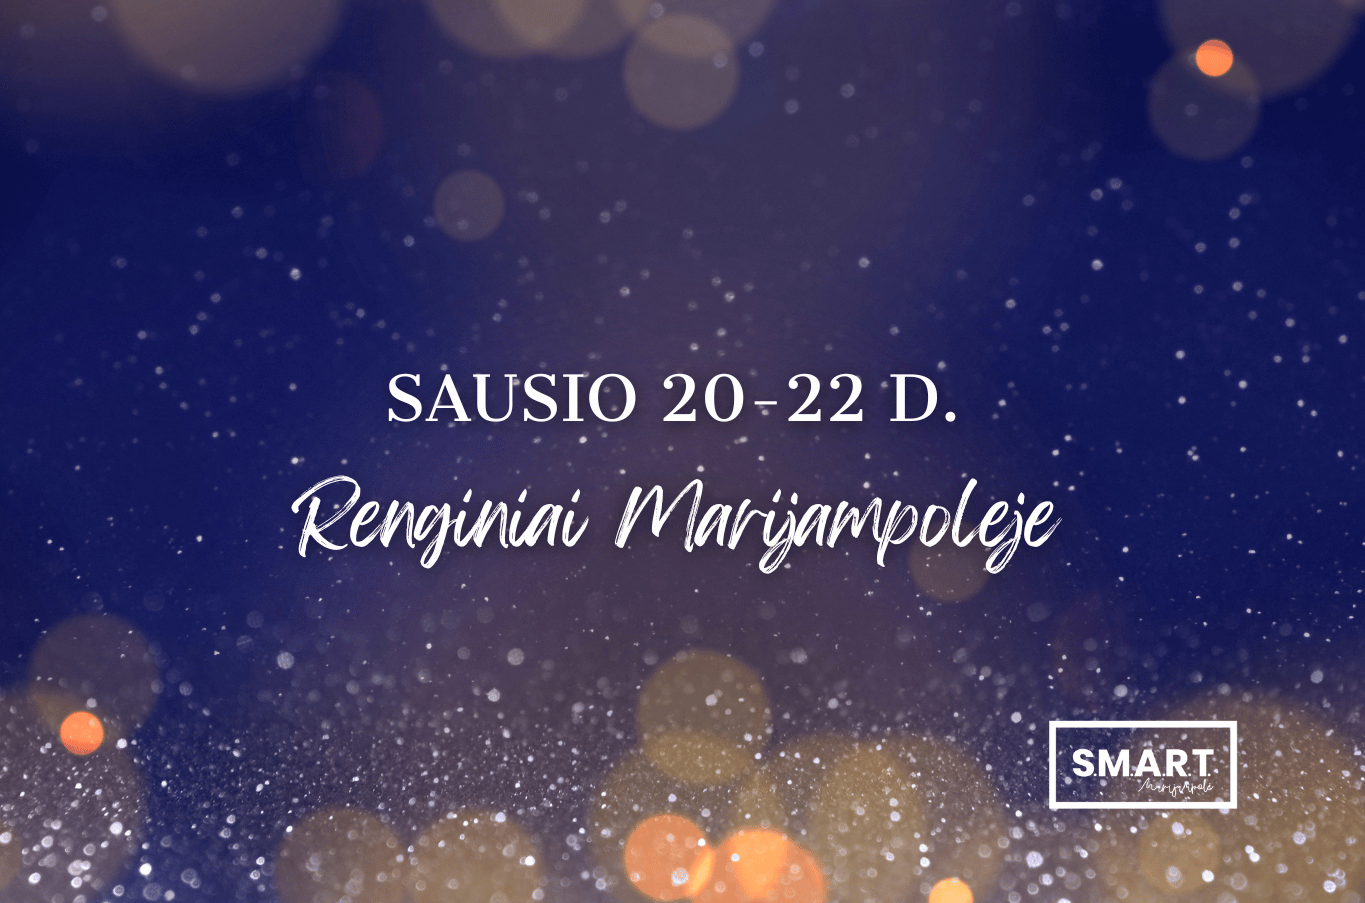 You are currently viewing Savaitgalio renginiai Marijampolėje | 01.20-01.22